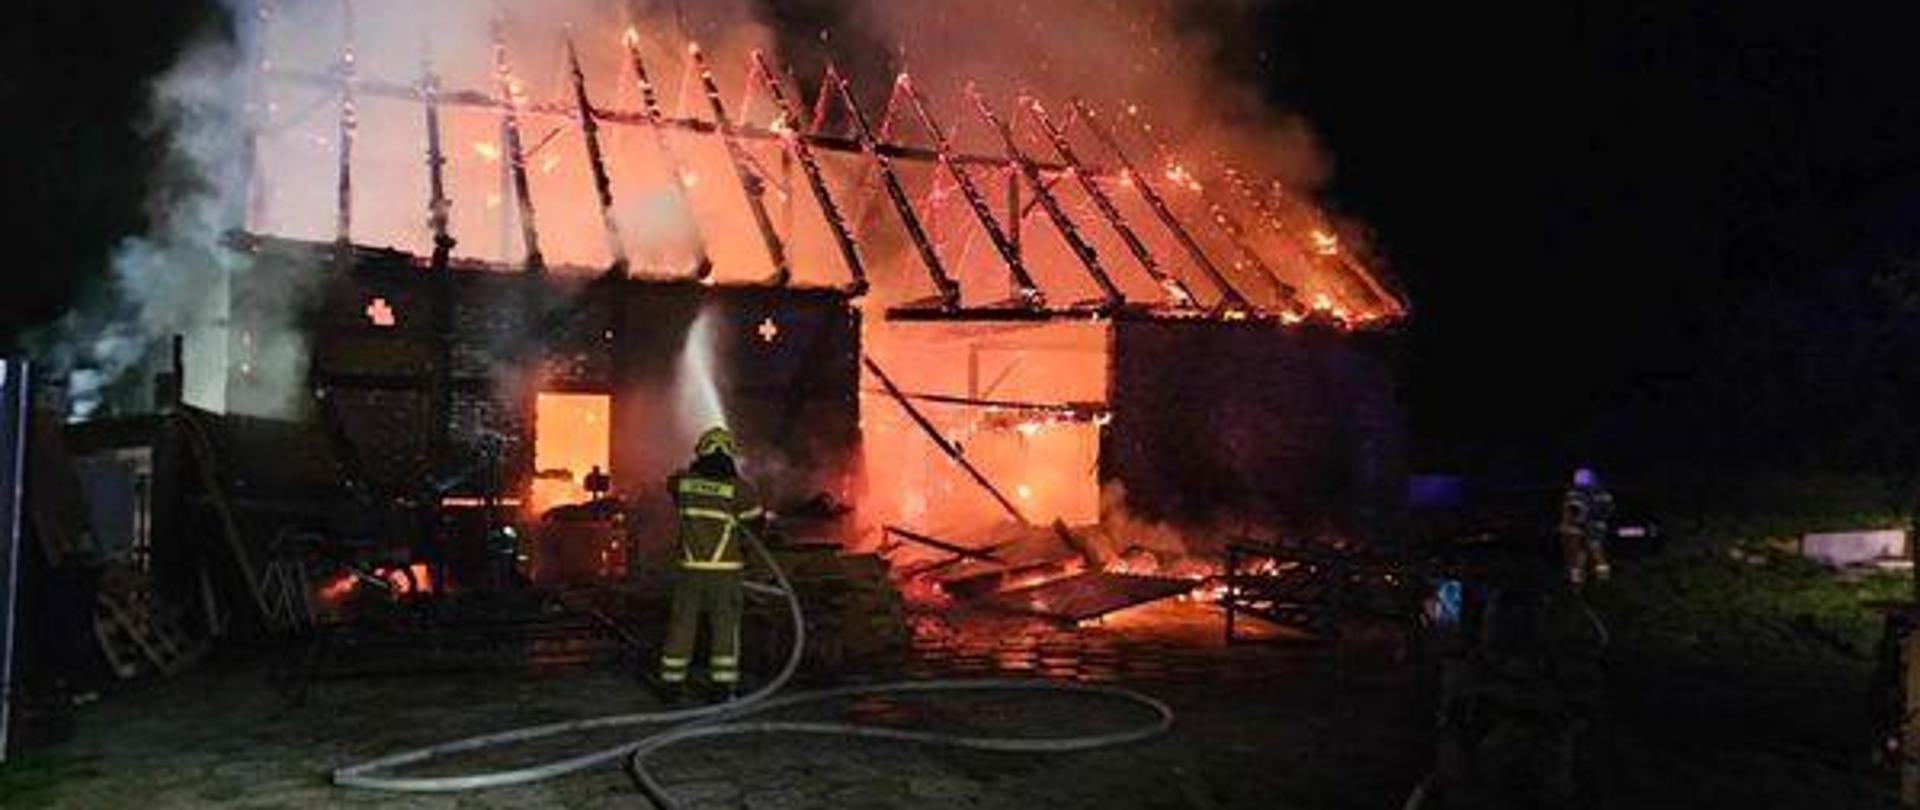 Pożar budynku gospodarczego w Wierzchosławiu